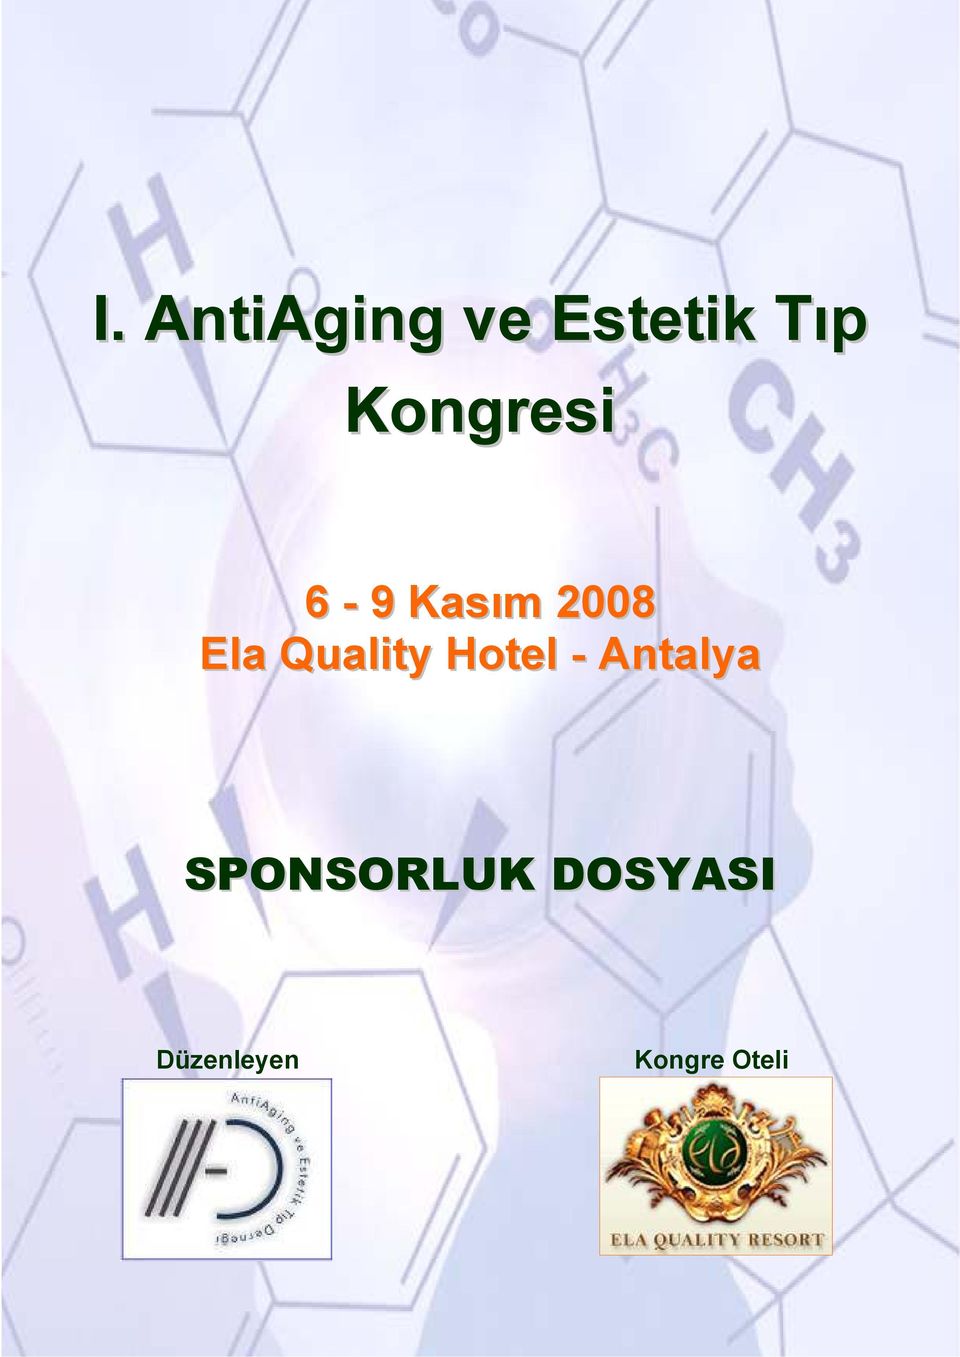 Quality Hotel - Antalya